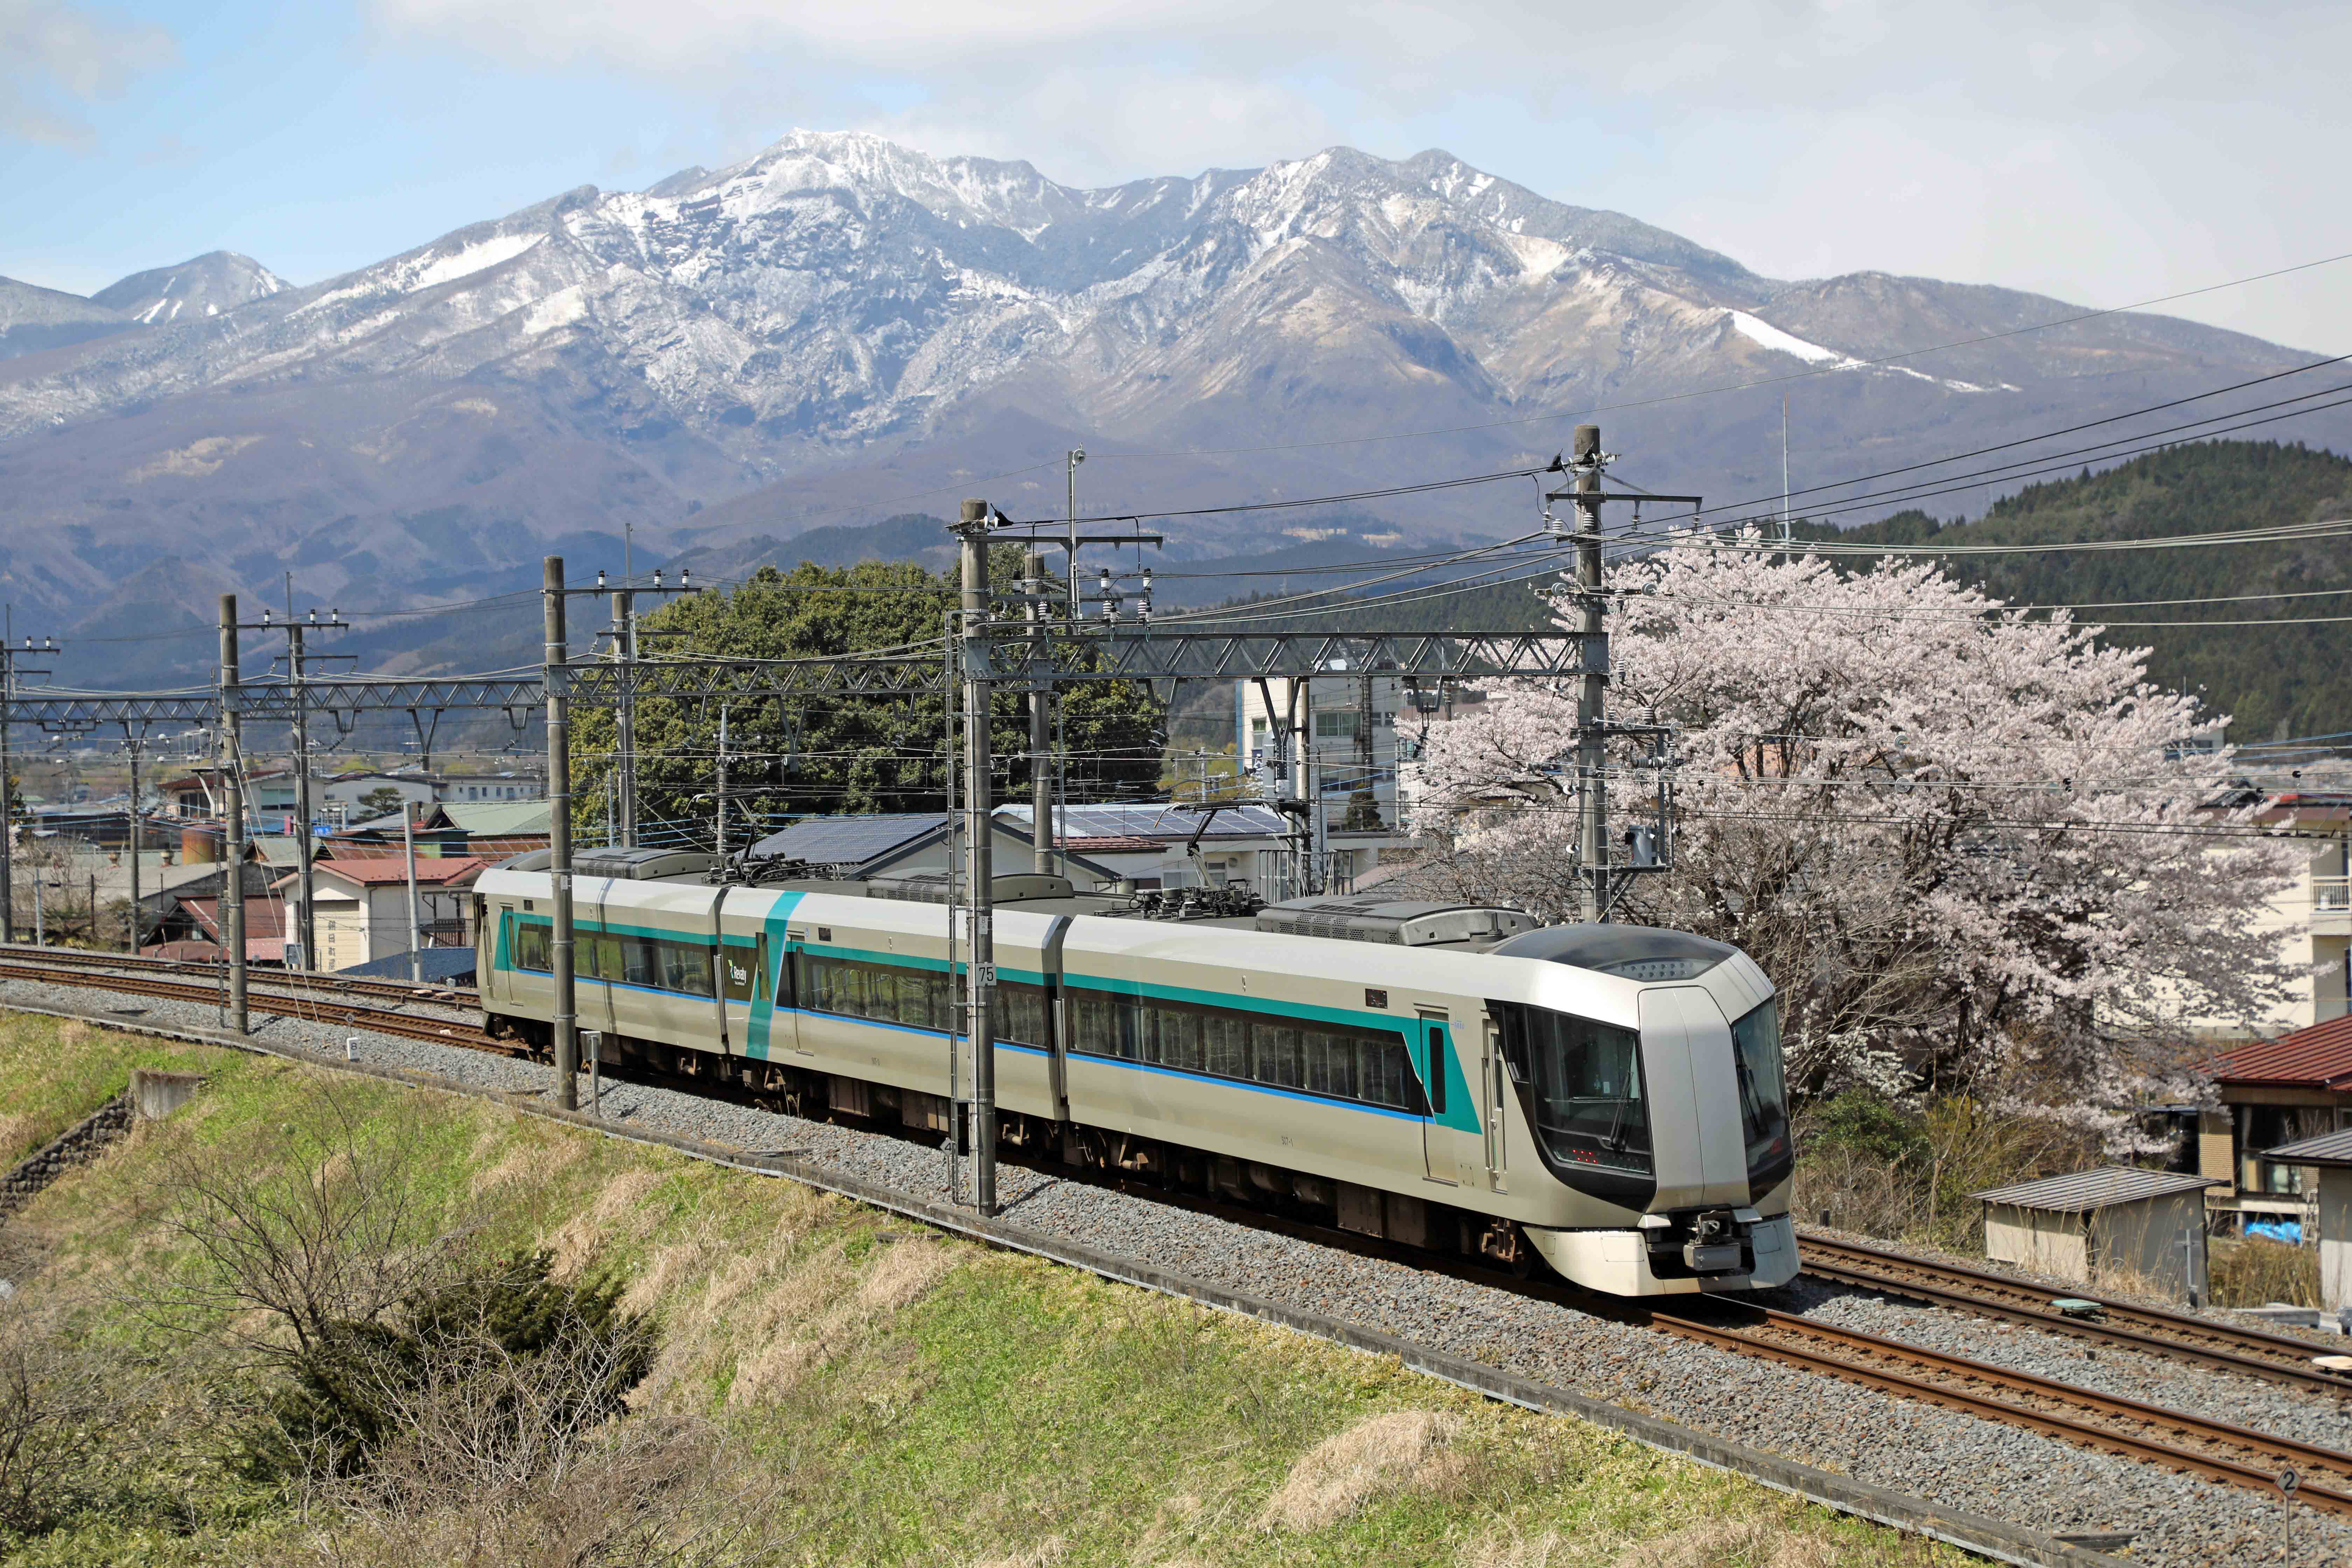 東武鉄道のある風景 特別企画 Sl 大樹のある風景 フォトコンテストを開催します 東武鉄道株式会社のプレスリリース